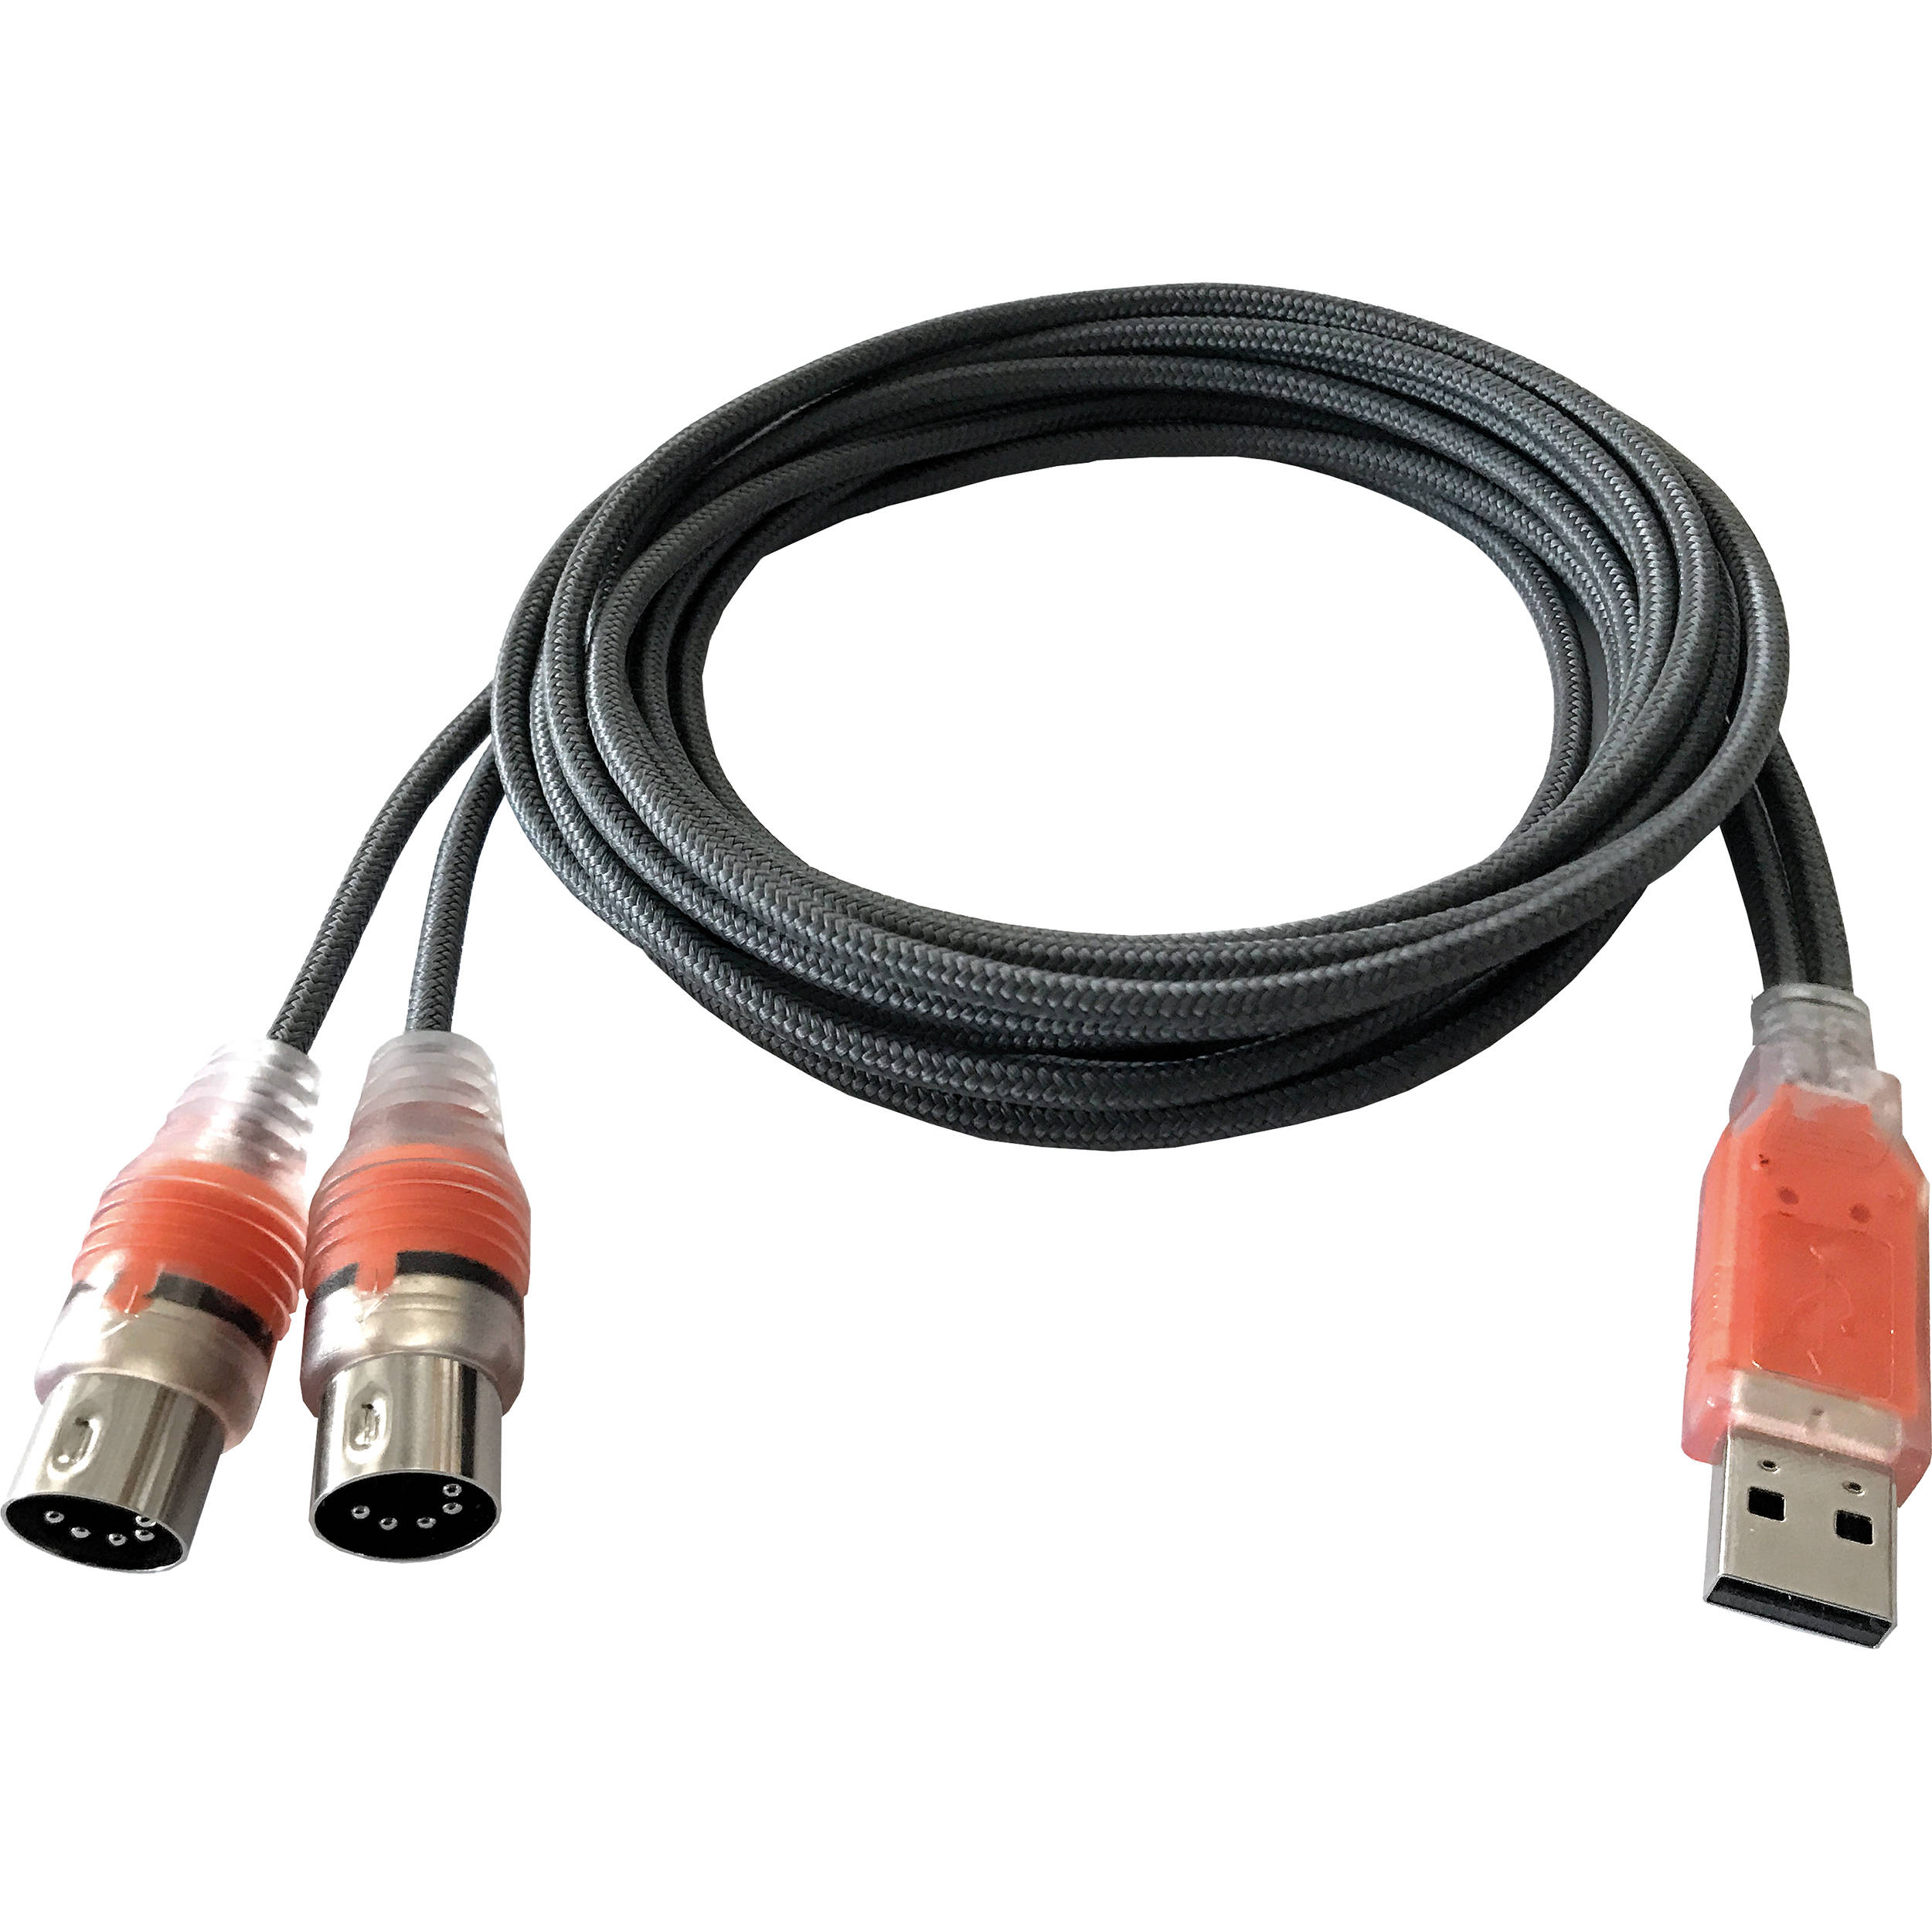 Esi Midimate Ex Usb Midi Interface Cable With Two I O Esi Mmex